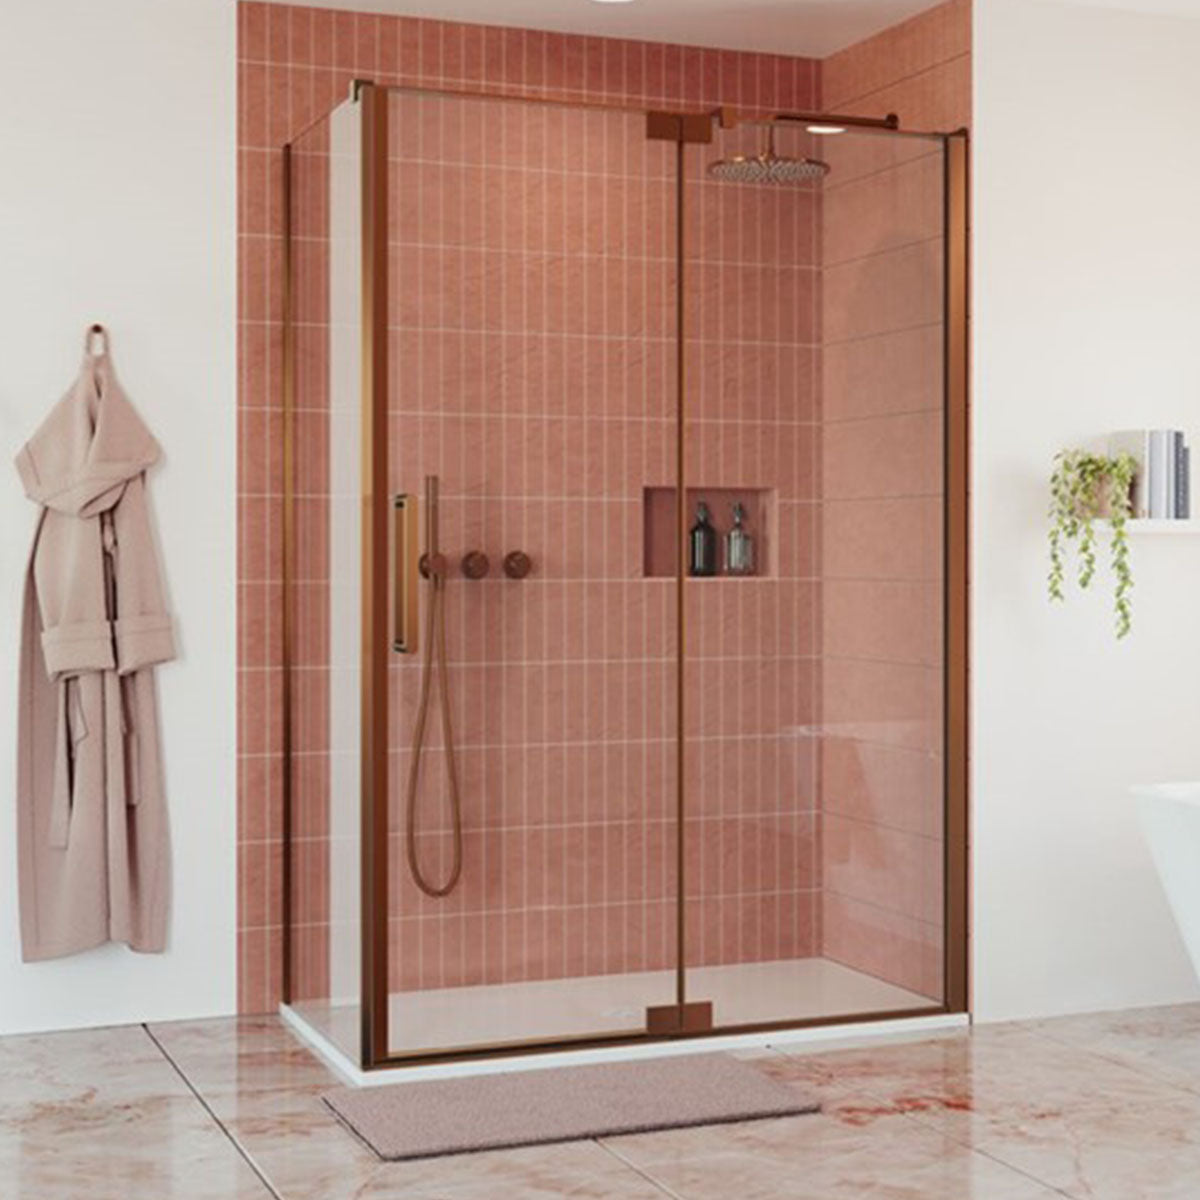 Crosswater Bathrooms  Deluxe Bathrooms & Tiling Solutions UK